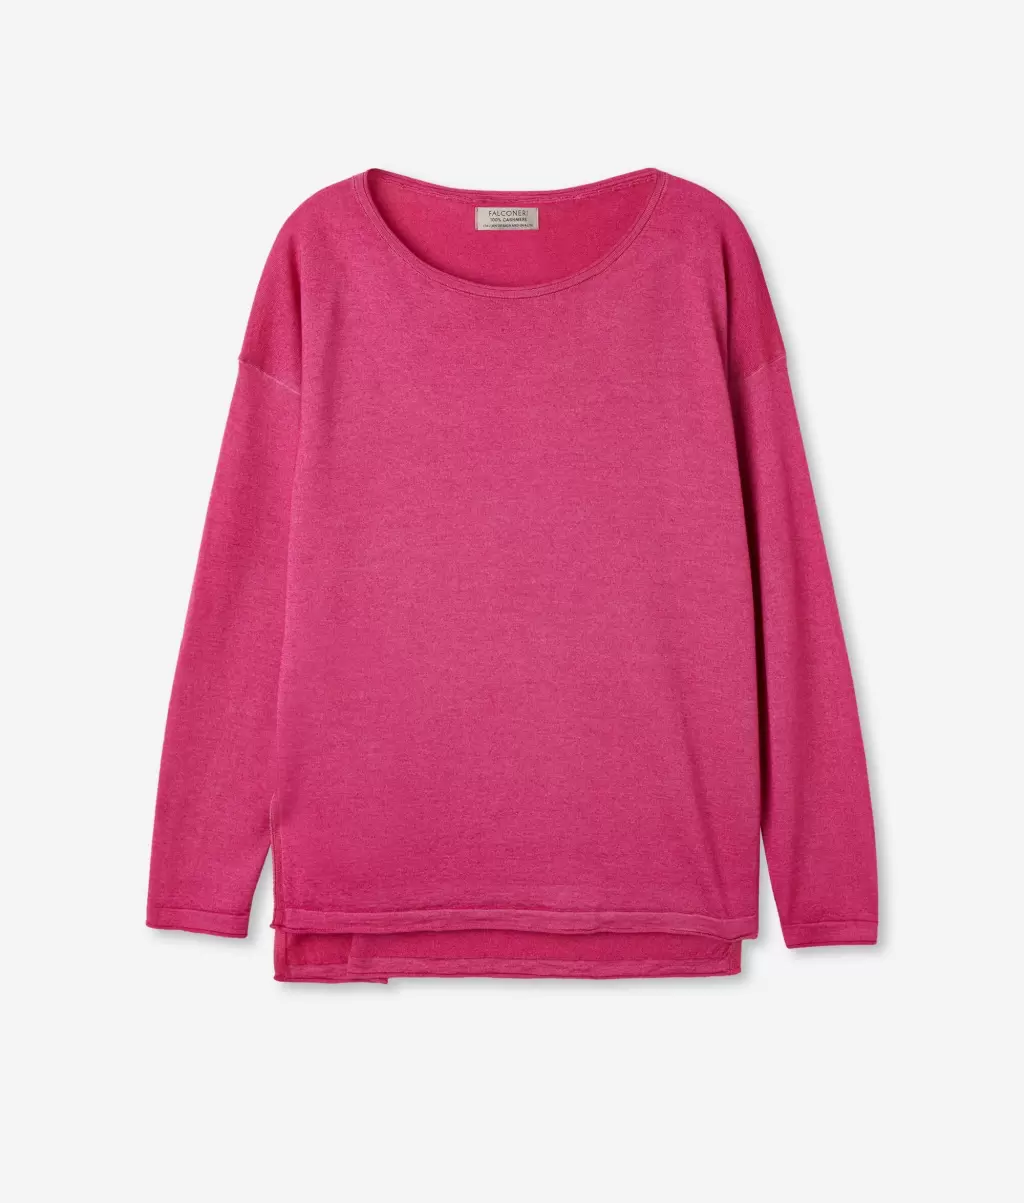 Swetry Z Okrągłym Dekoltem Bluzka Z Dekoltem W Łódkę Z Kaszmiru Ultrafine Kobieta Falconeri Pink - 4